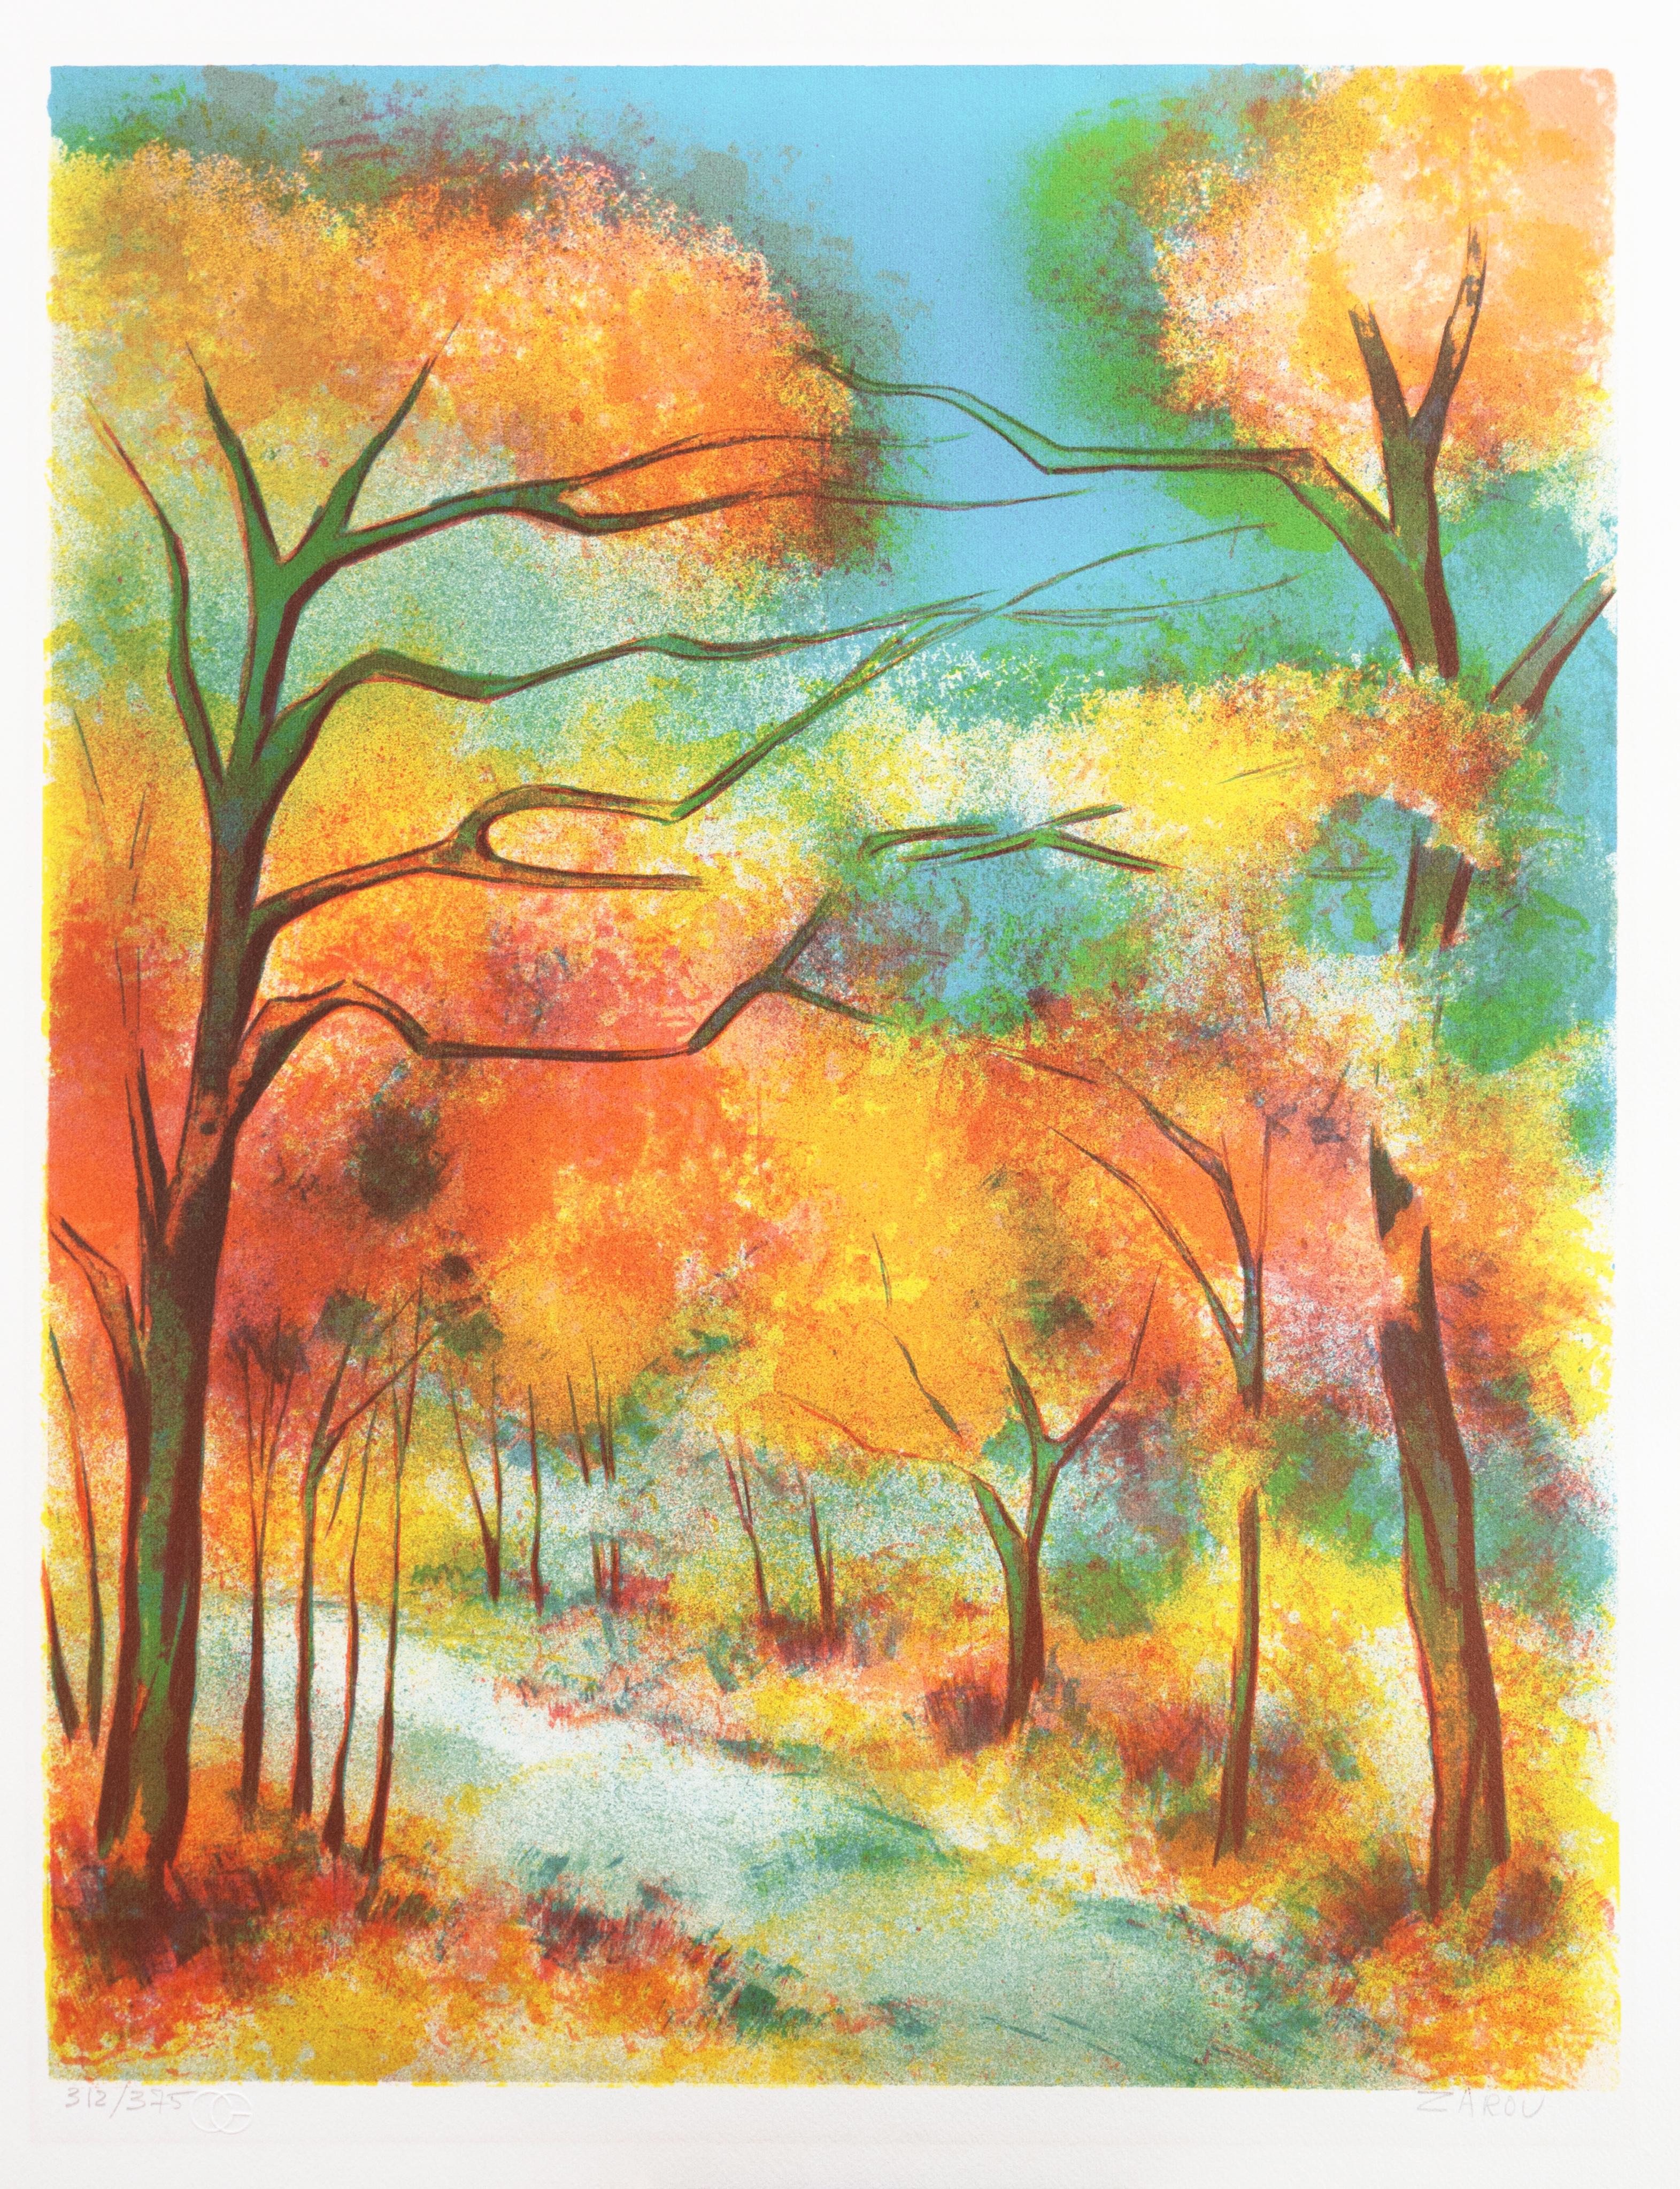  'Autumn Colors', French Post-Impressionist Landscape, Academie Julian, Paris - Print by Victor Zarou